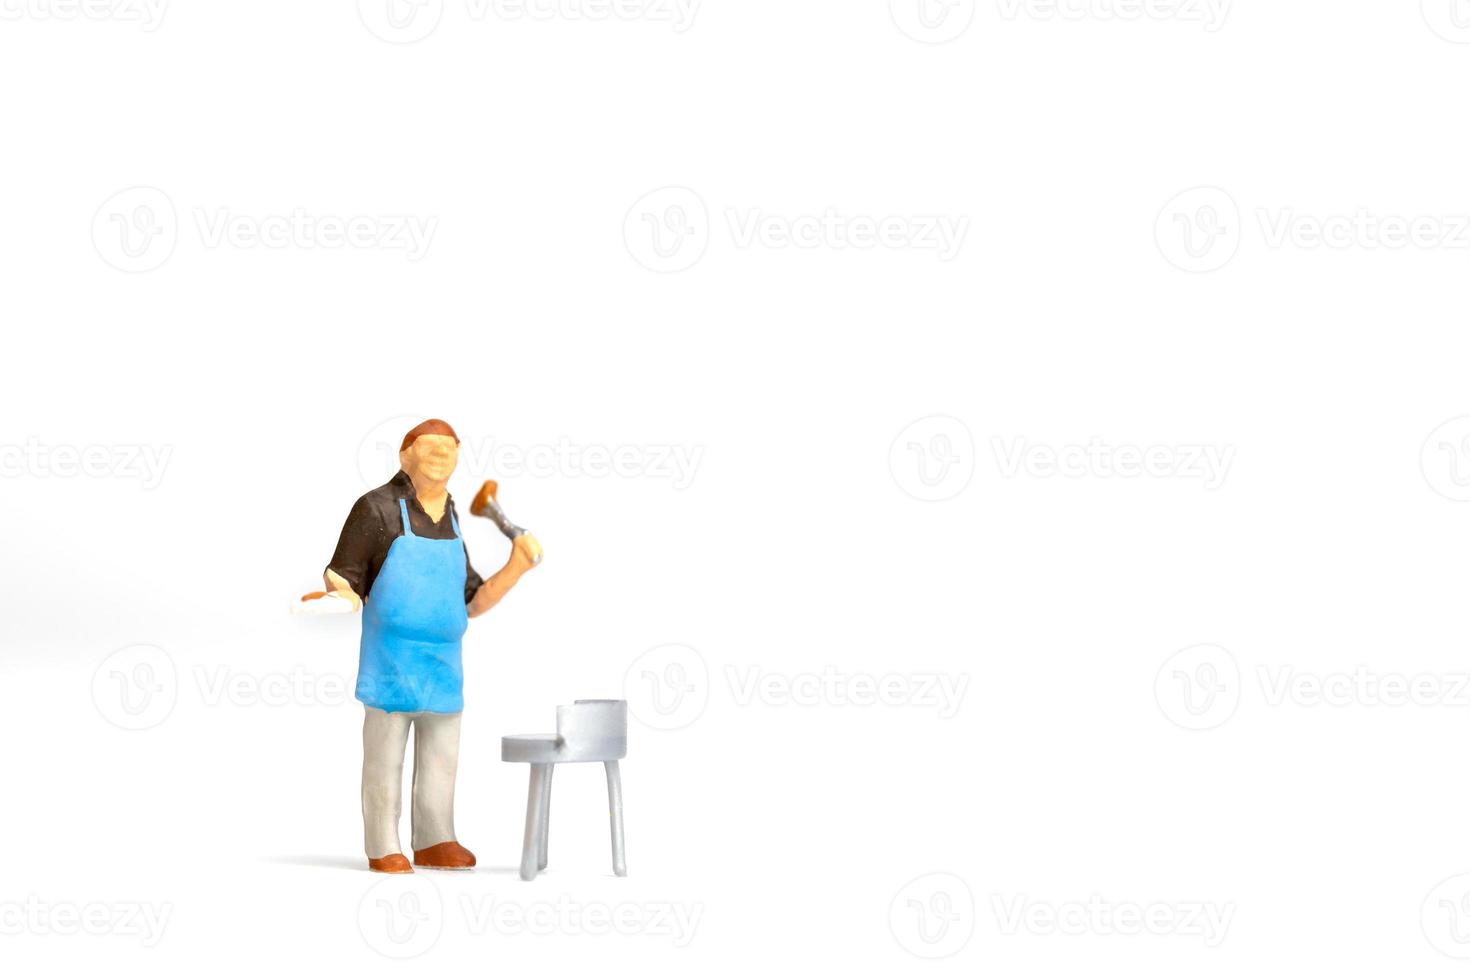 miniatyr människor, kock matlagning biff på grill isolerad på vit bakgrund foto